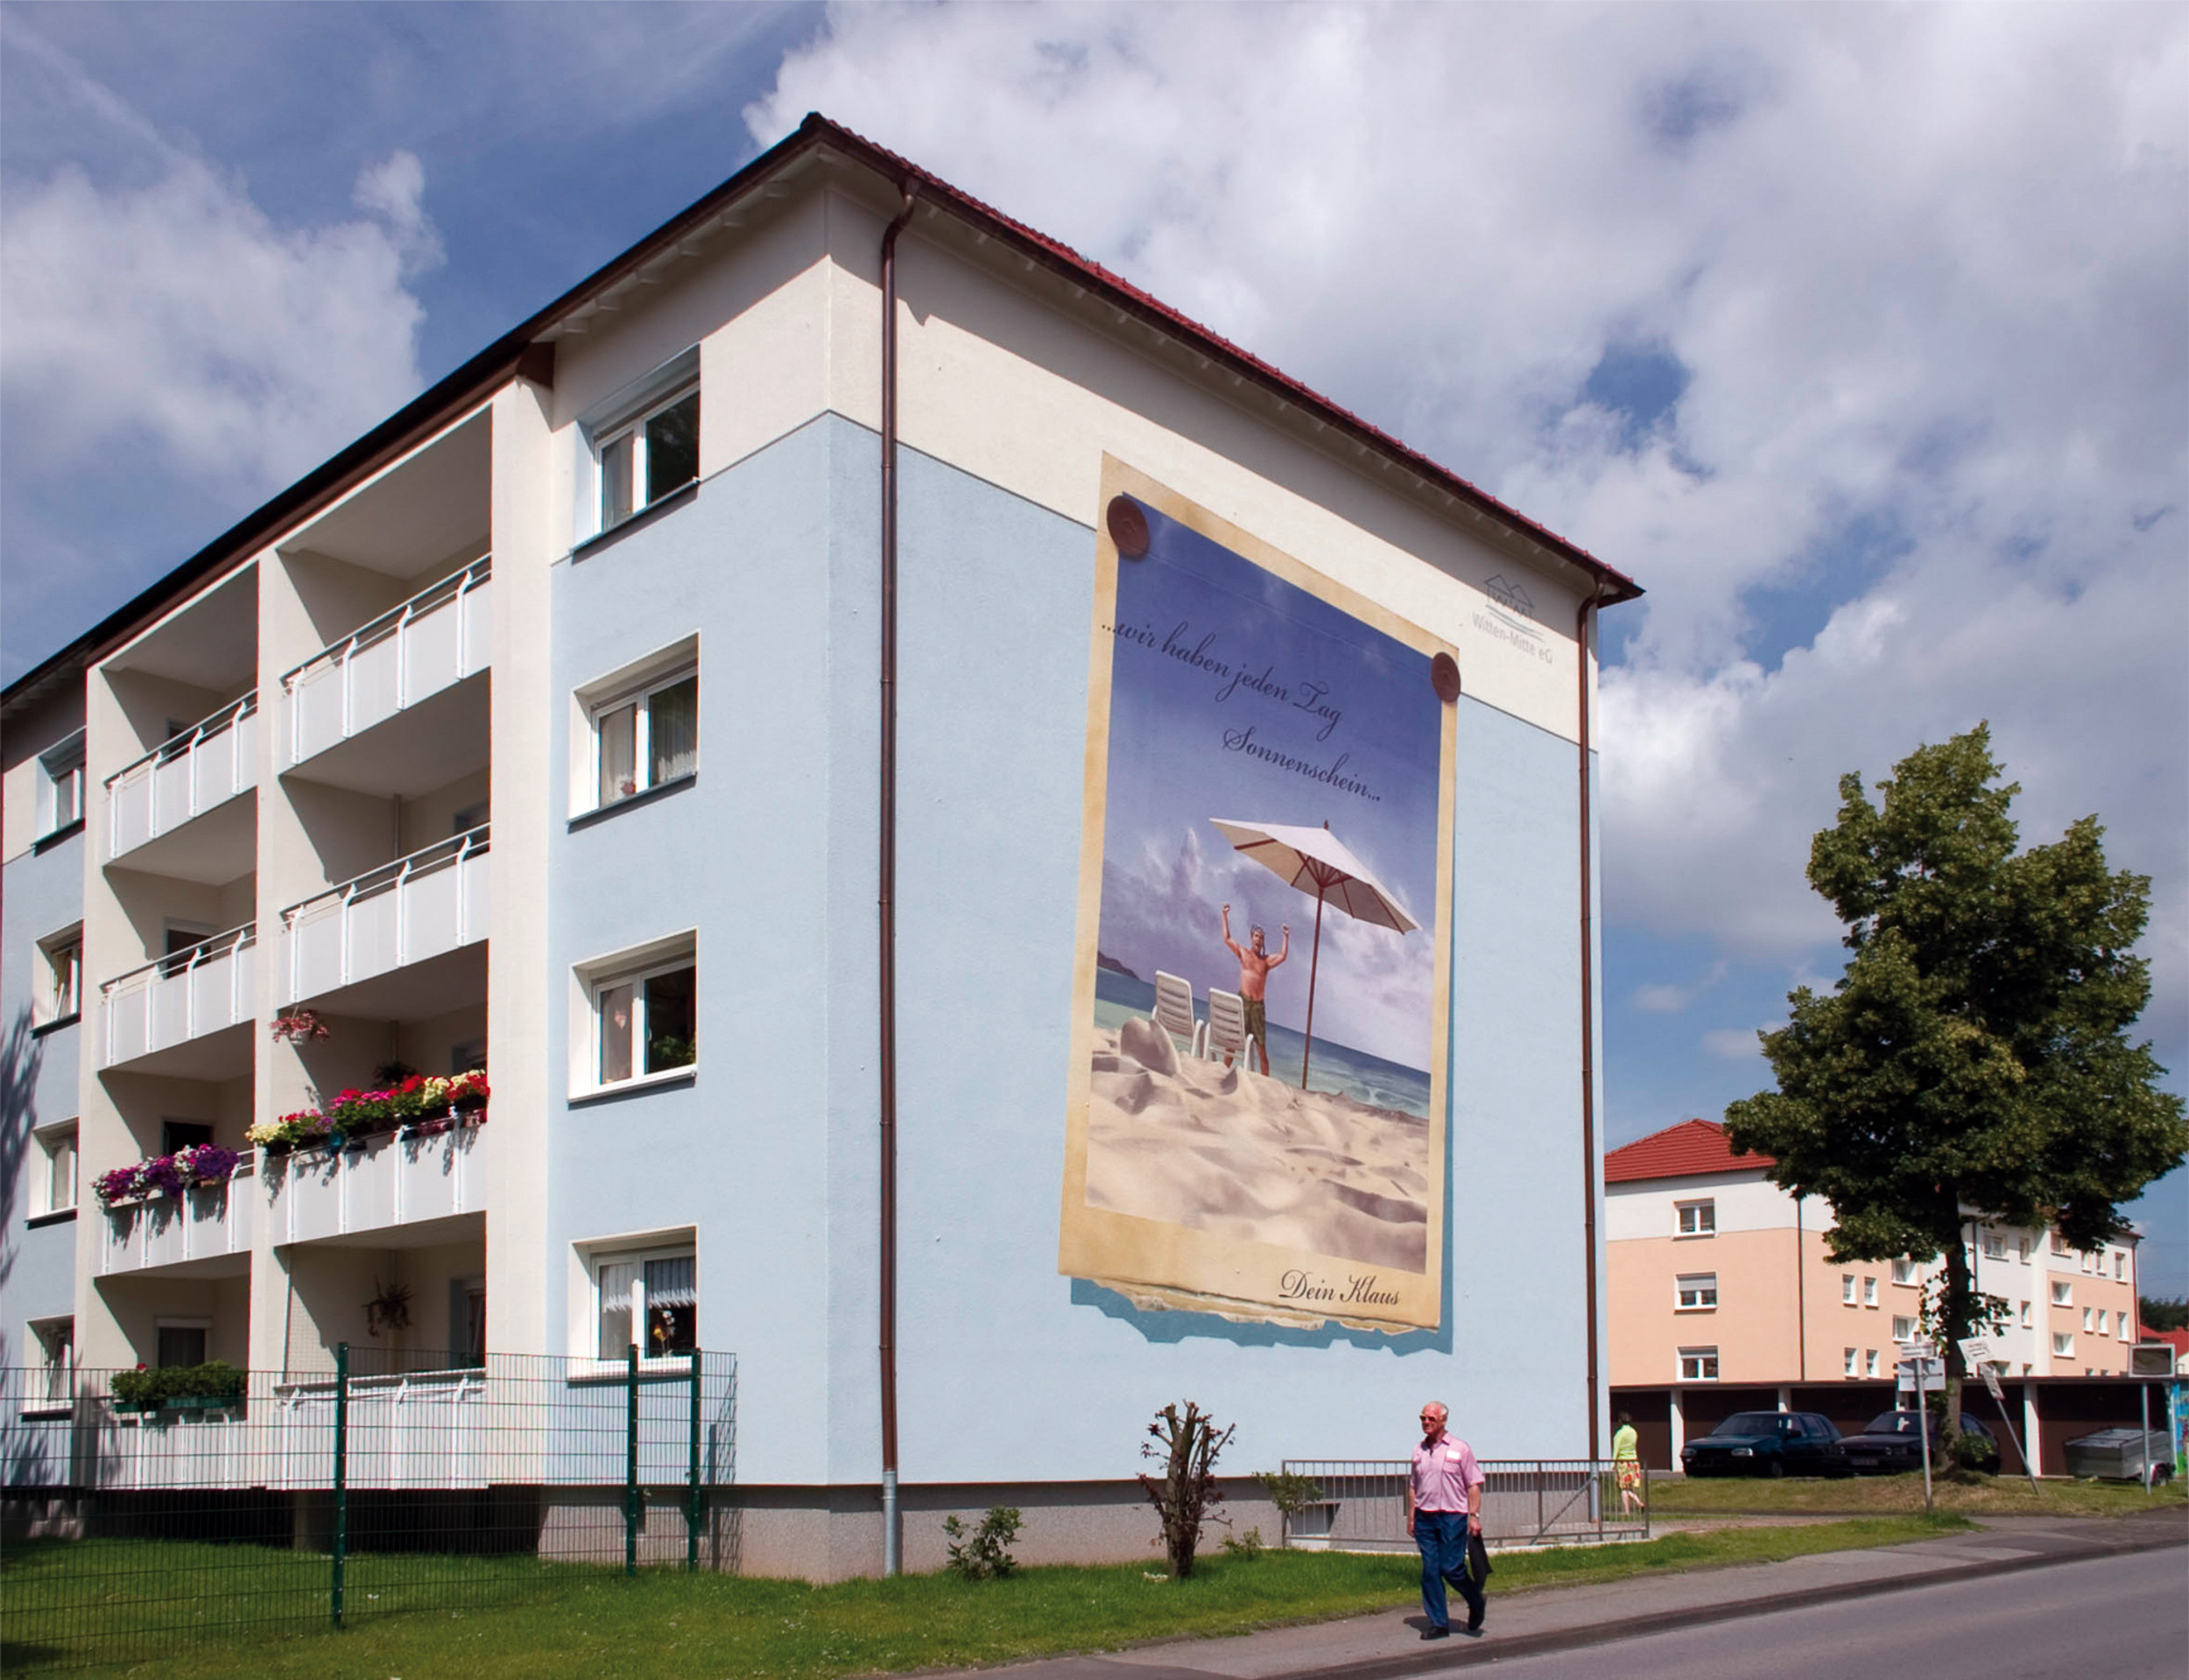 Fassadengestaltung-auf-Putz-brandmauer-wohbau-farbkonzept-reklame-wandbild-Beispiel.jpg